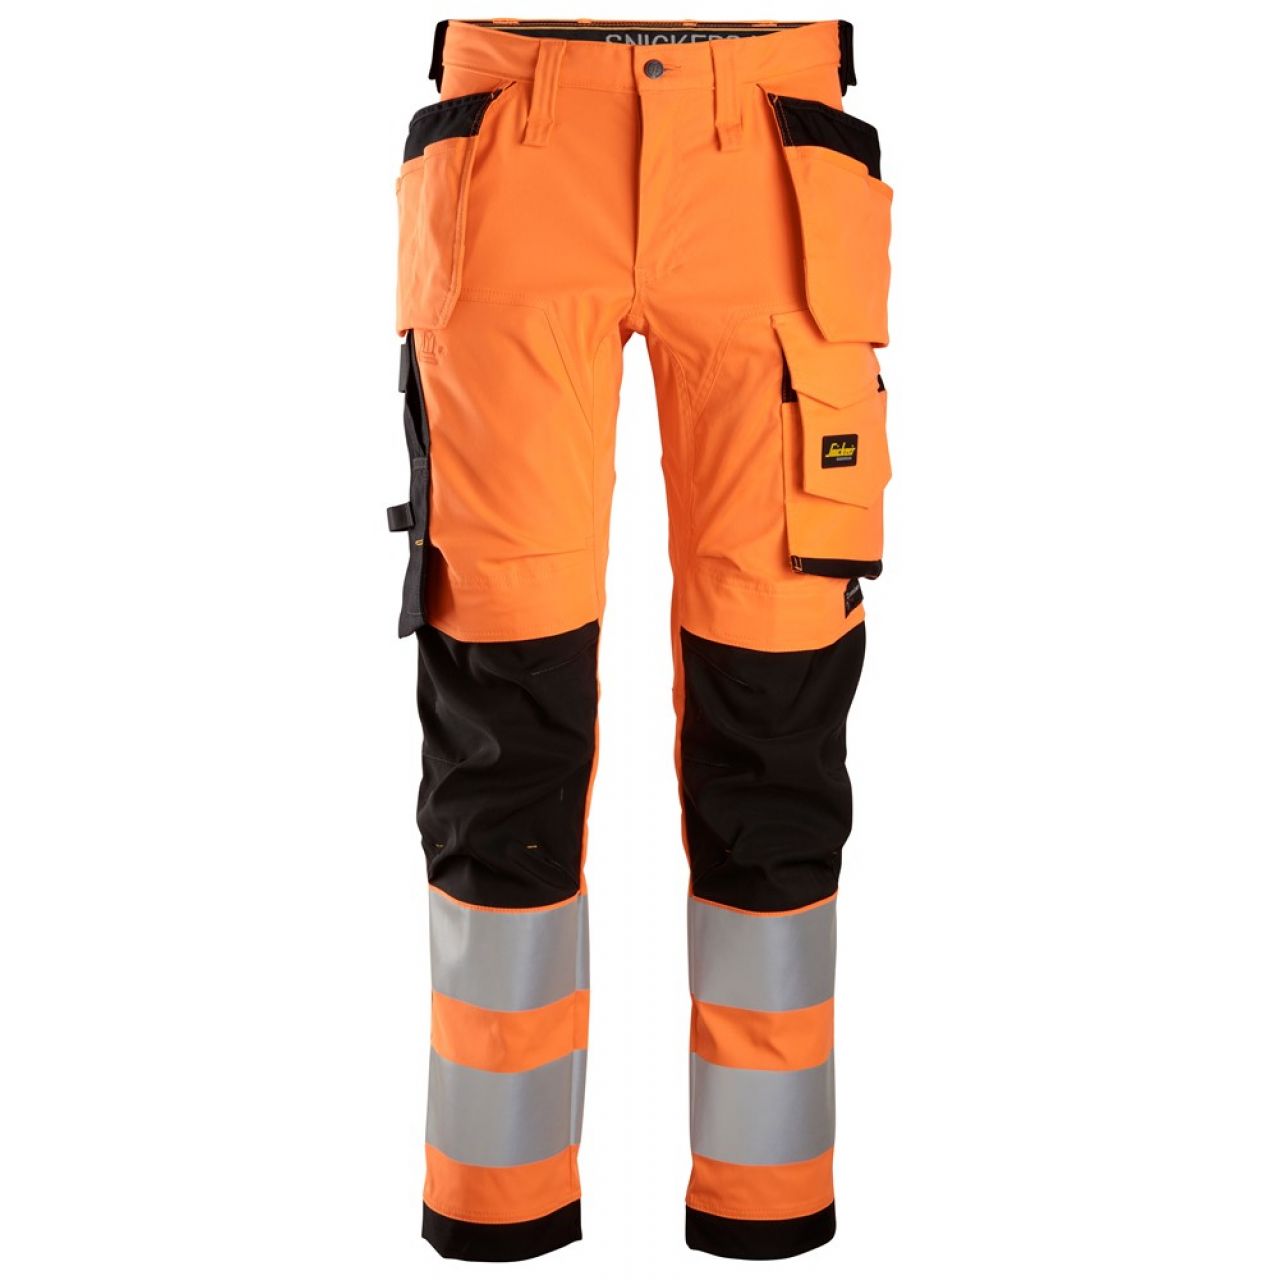 6243 Pantalones largos de trabajo elásticos de alta visibilidad clase 2 con bolsillos flotantes naranja-negro talla 58